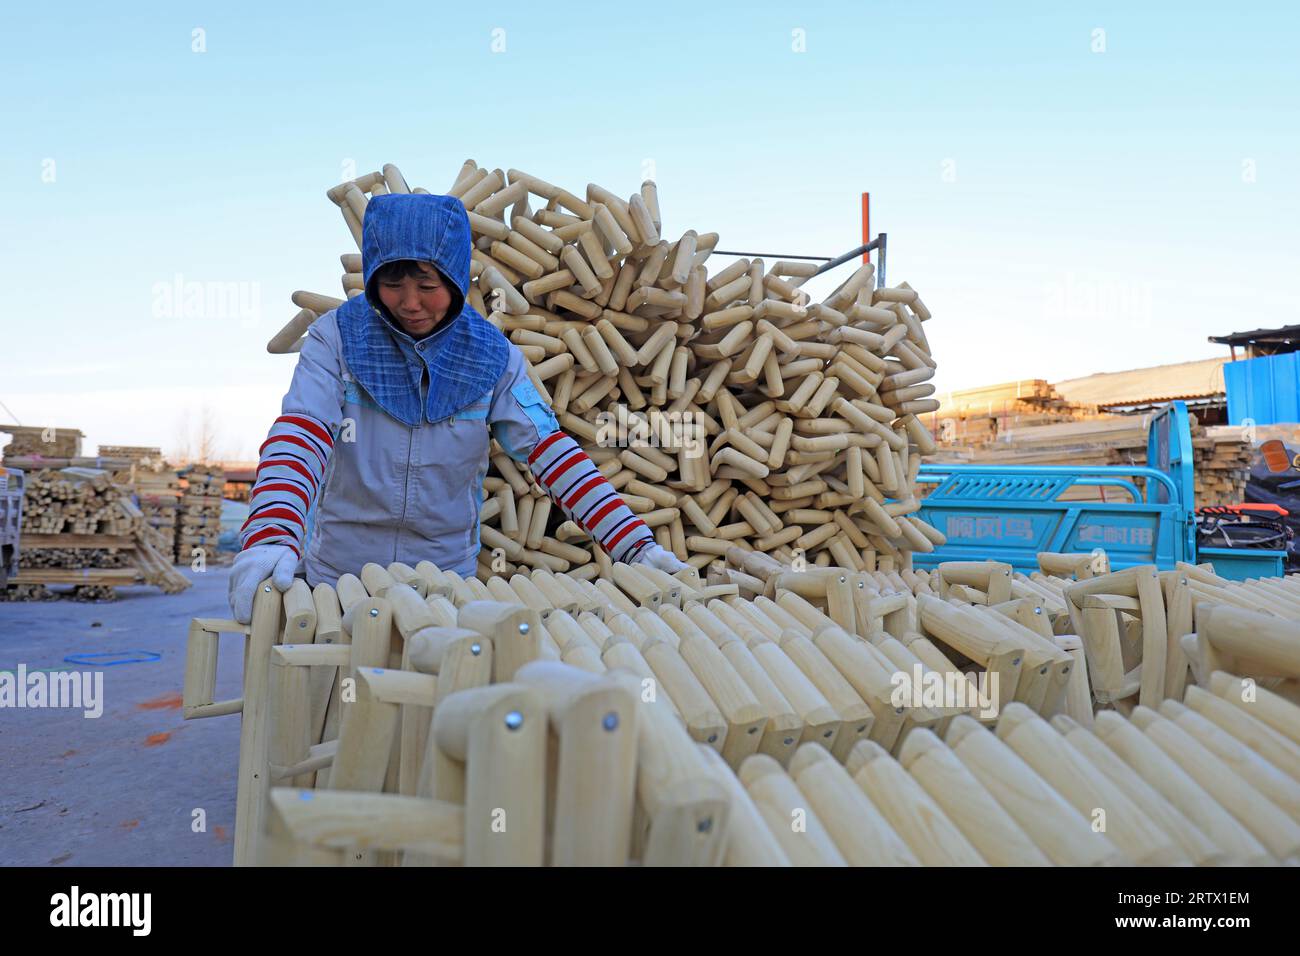 CONTEA DI LUANNAN, Cina - 25 novembre 2021: I lavoratori riordinano le maniglie a forcella in legno lavorate in una fabbrica, nel nord della Cina Foto Stock